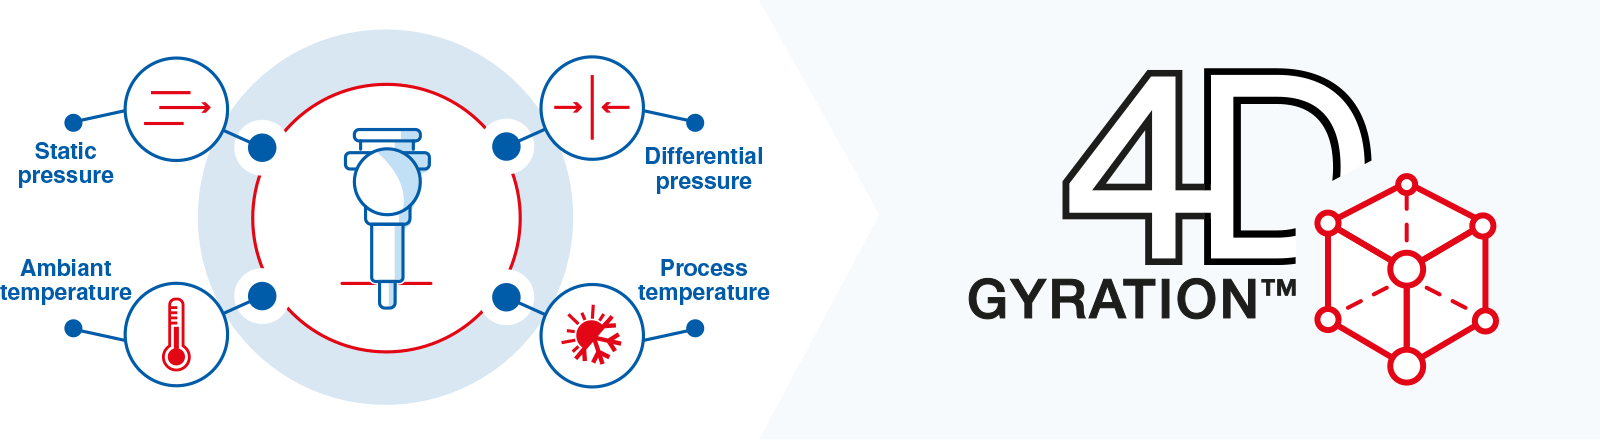 process-unique-gyration-4d-tm-schema-en